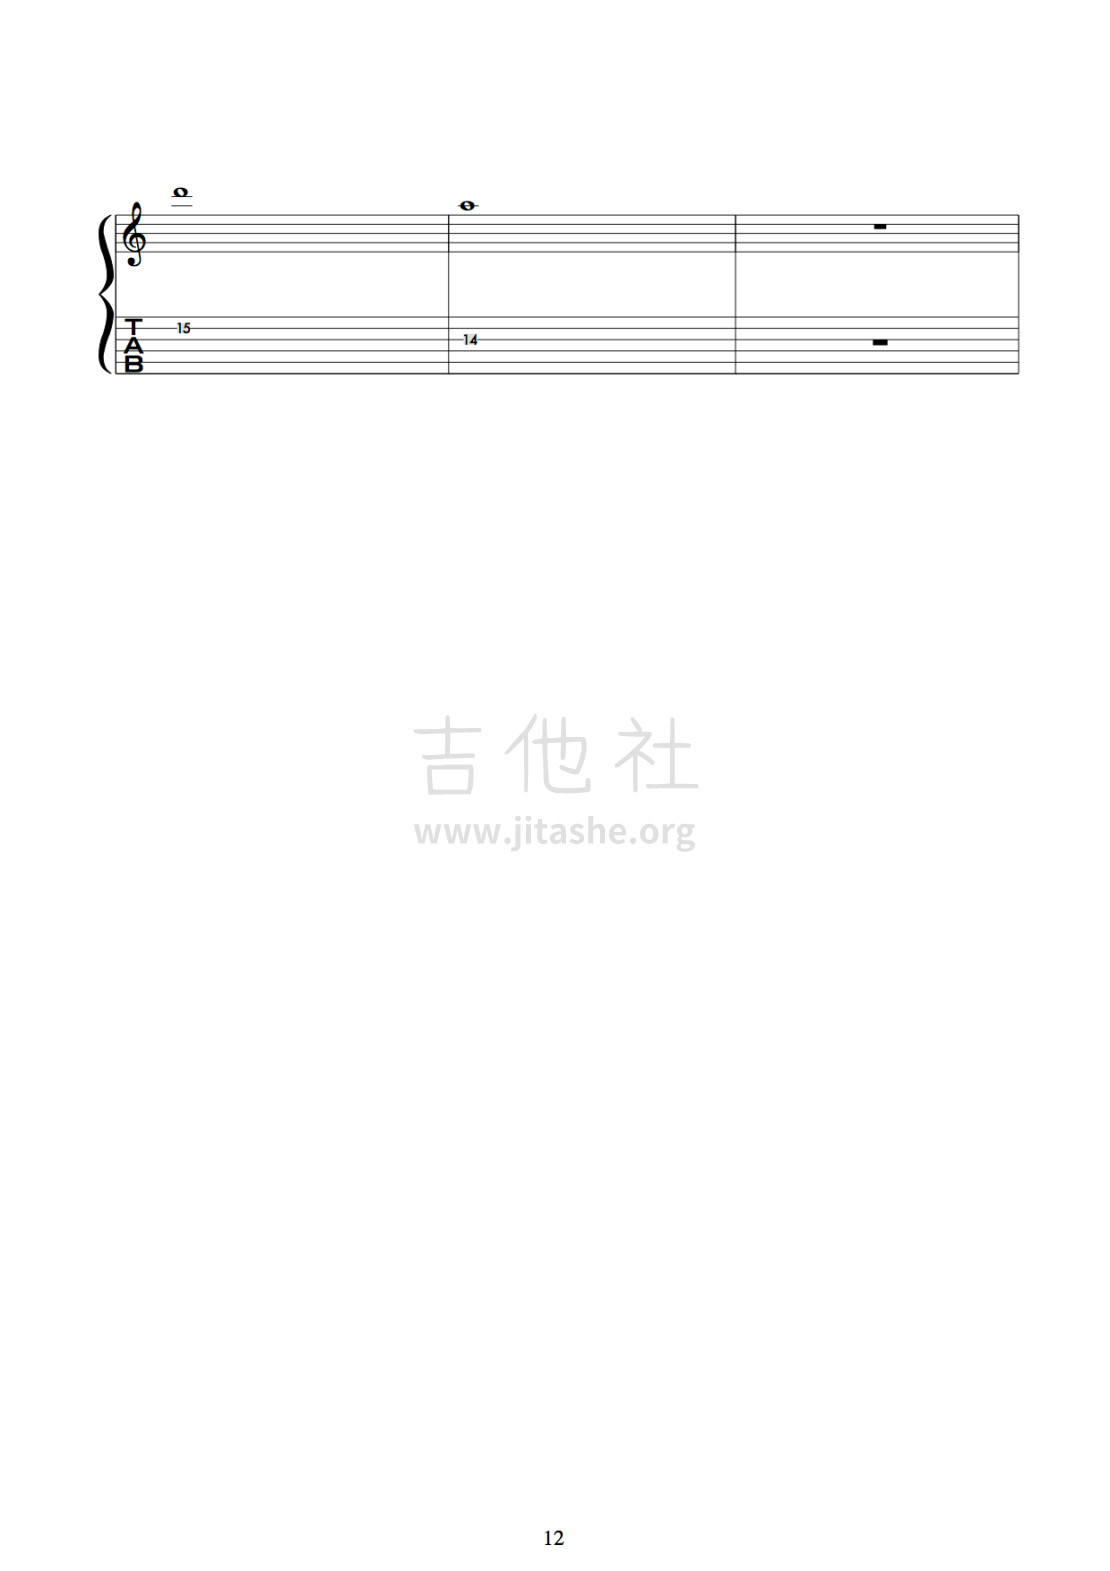 中式摇滚吉他曲《侠》曲谱+伴奏吉他谱(图片谱,电吉他)_群星(Various Artists)_12